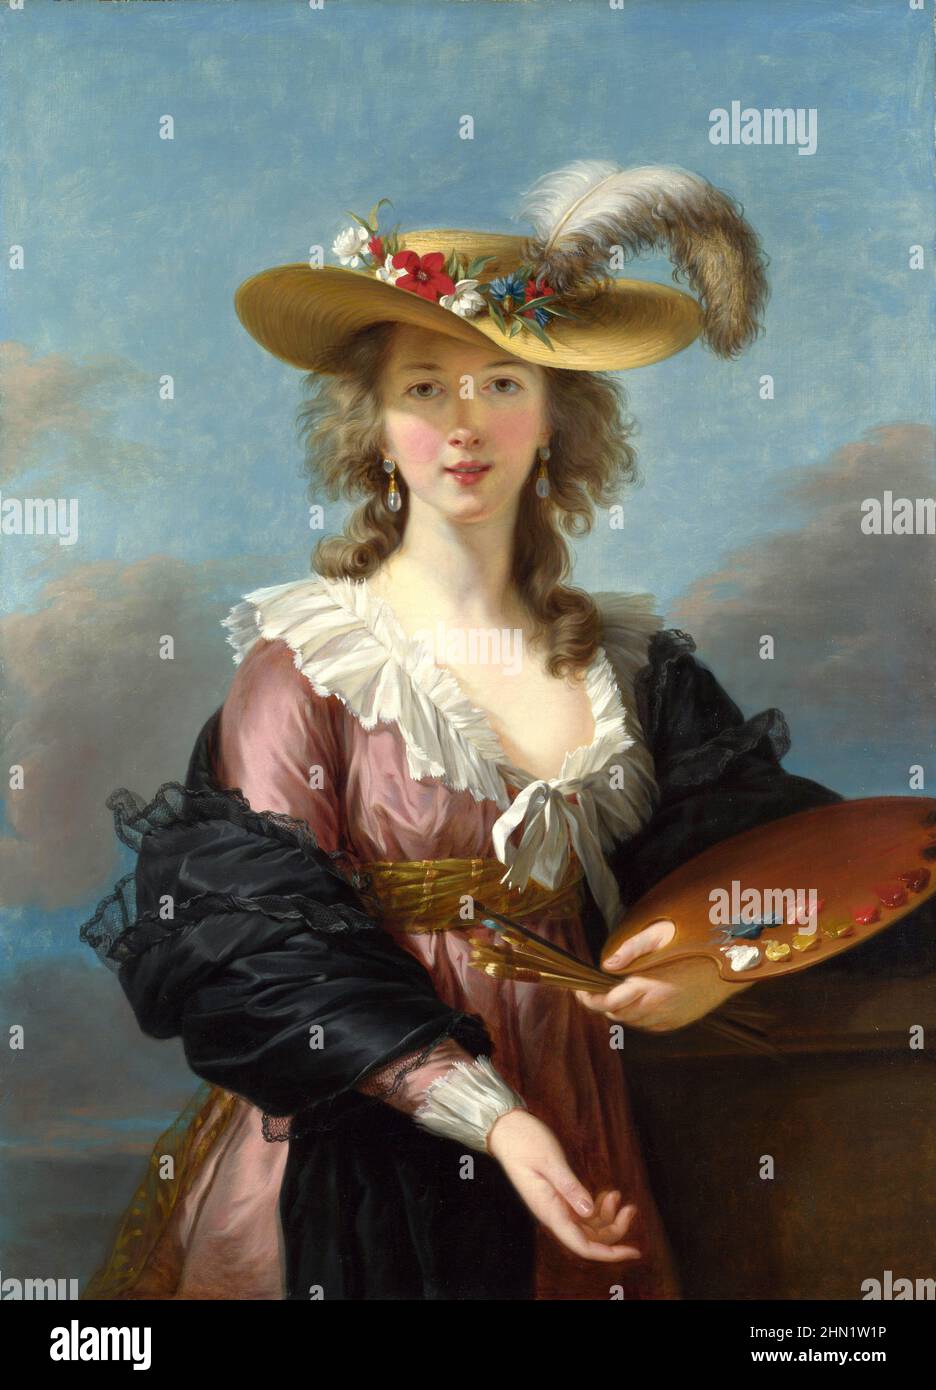 Élisabeth Louise Vigée Le Brun (1755 – 1842) bekannt als Madame Le Brun, eine französische Porträtmalerin im späten 18th. Jahrhundert. Selbstporträt in einem Strohhut, 1782 Stockfoto